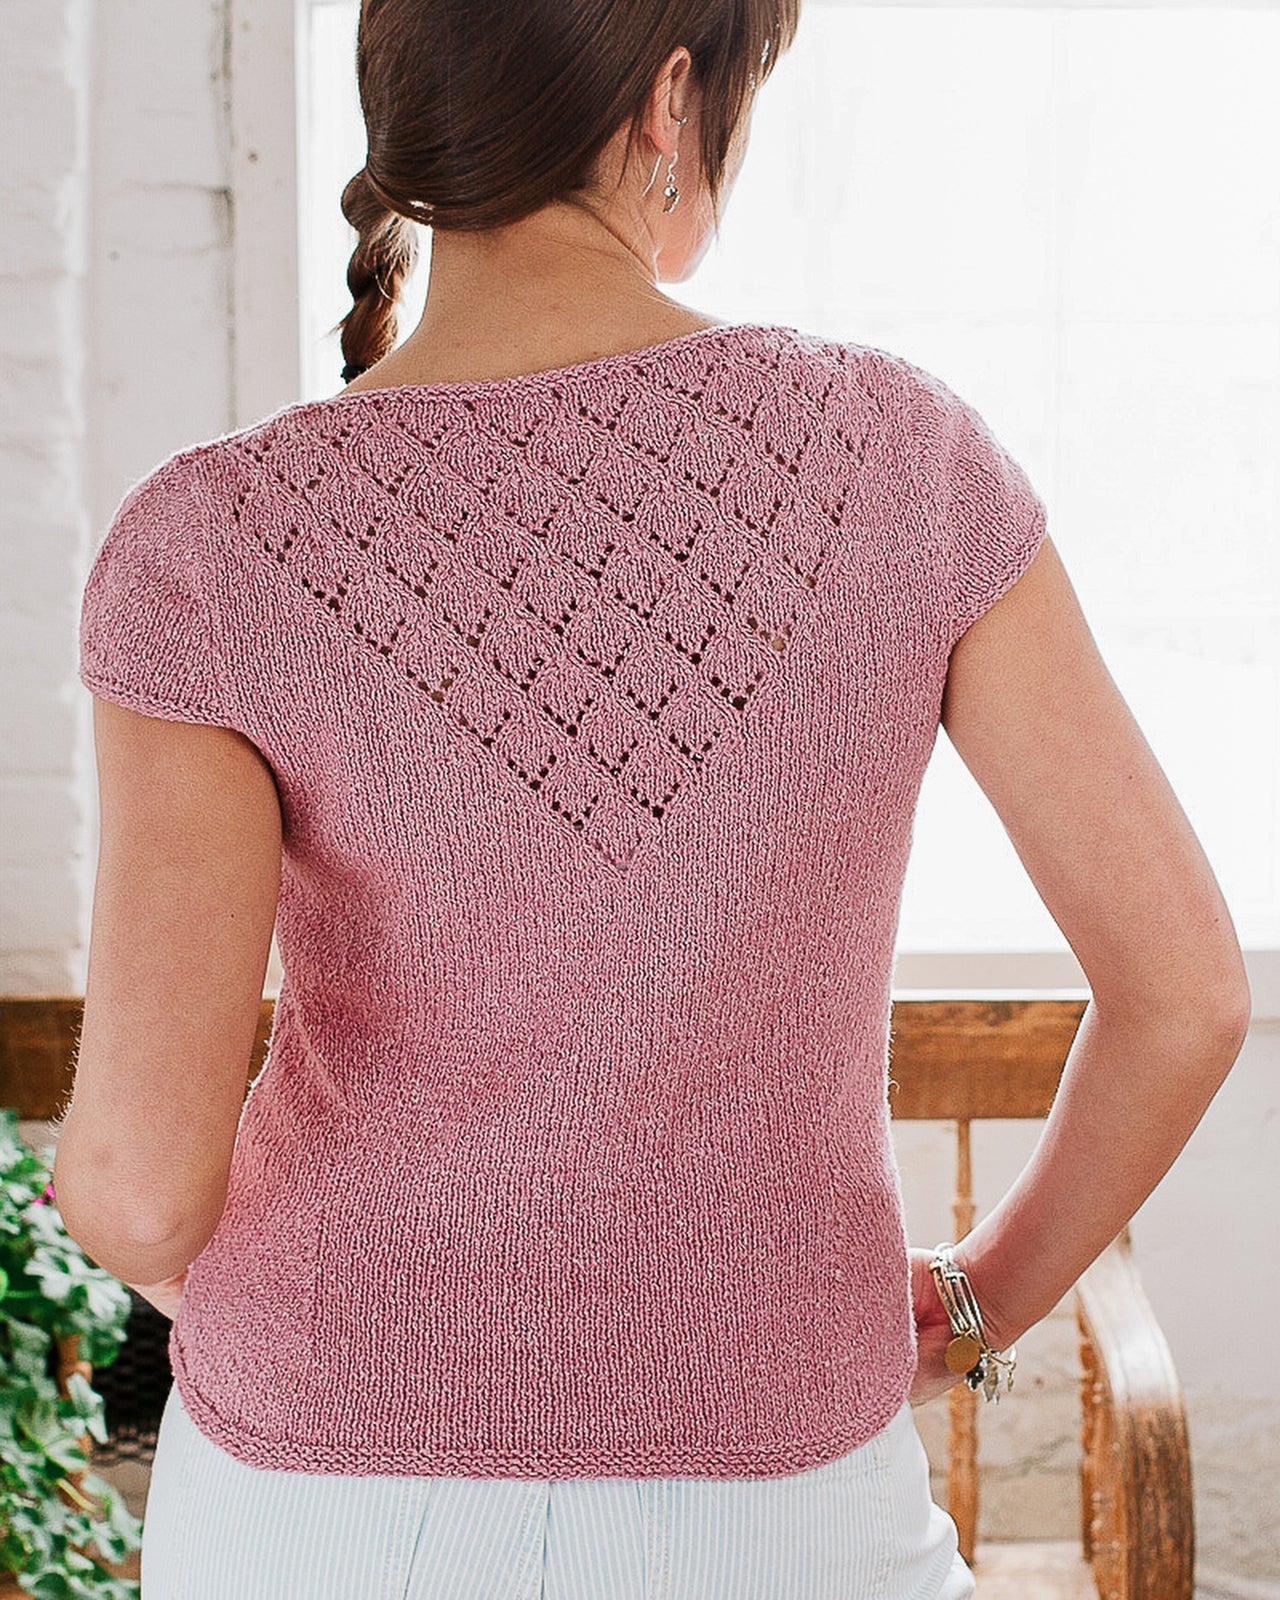 Harrisville Designs - AVENS Knitting Pattern – Harrisville Designs, Inc.